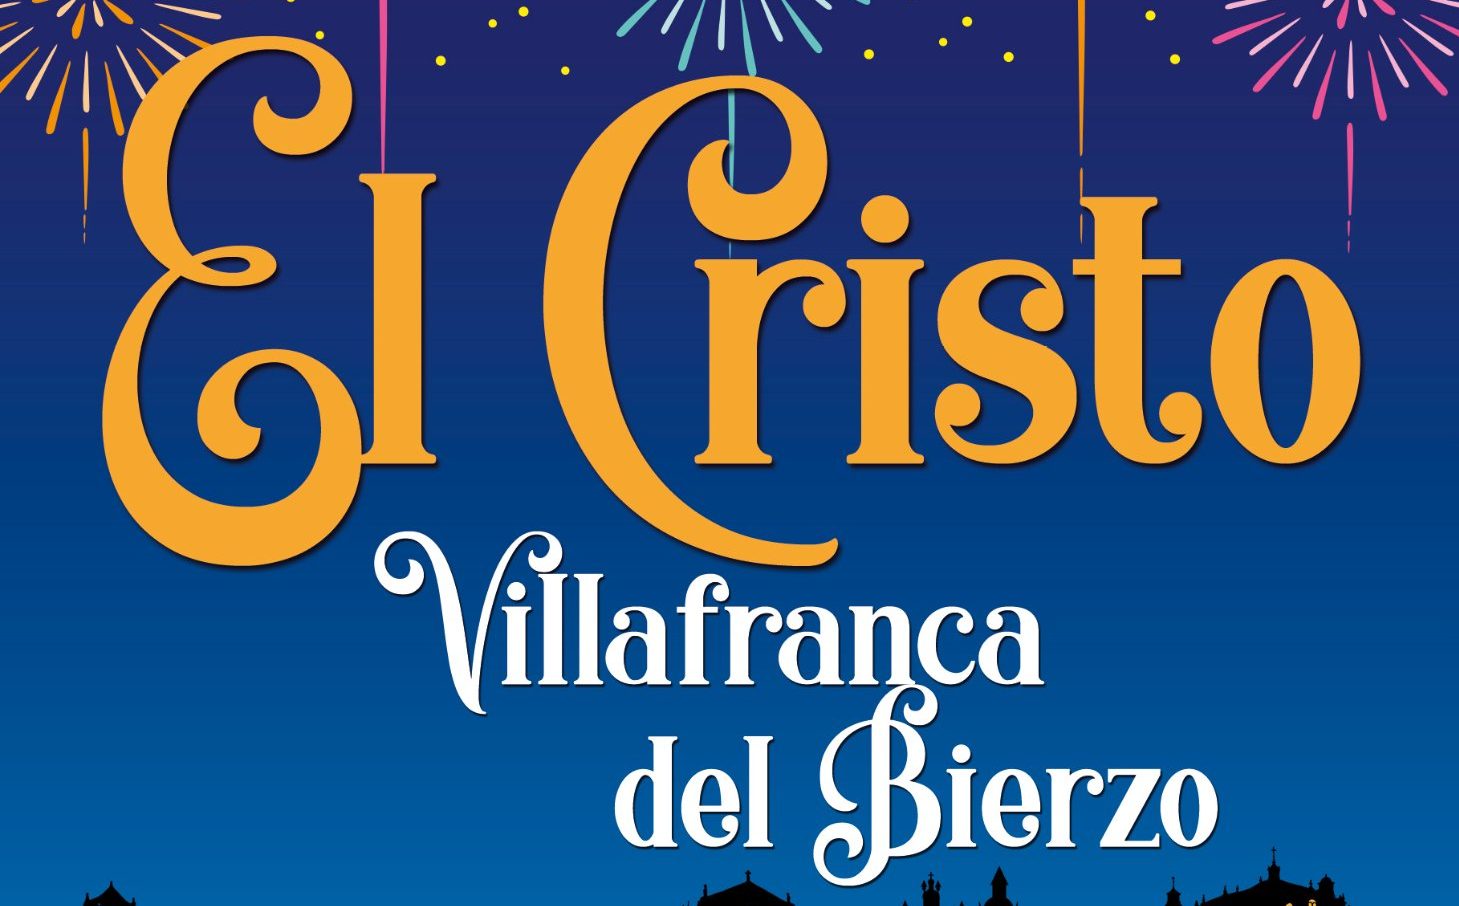 Grandes Fiestas del Cristo en Villafranca del Bierzo 11 al 17 de septiembre. Programa de actividades 1